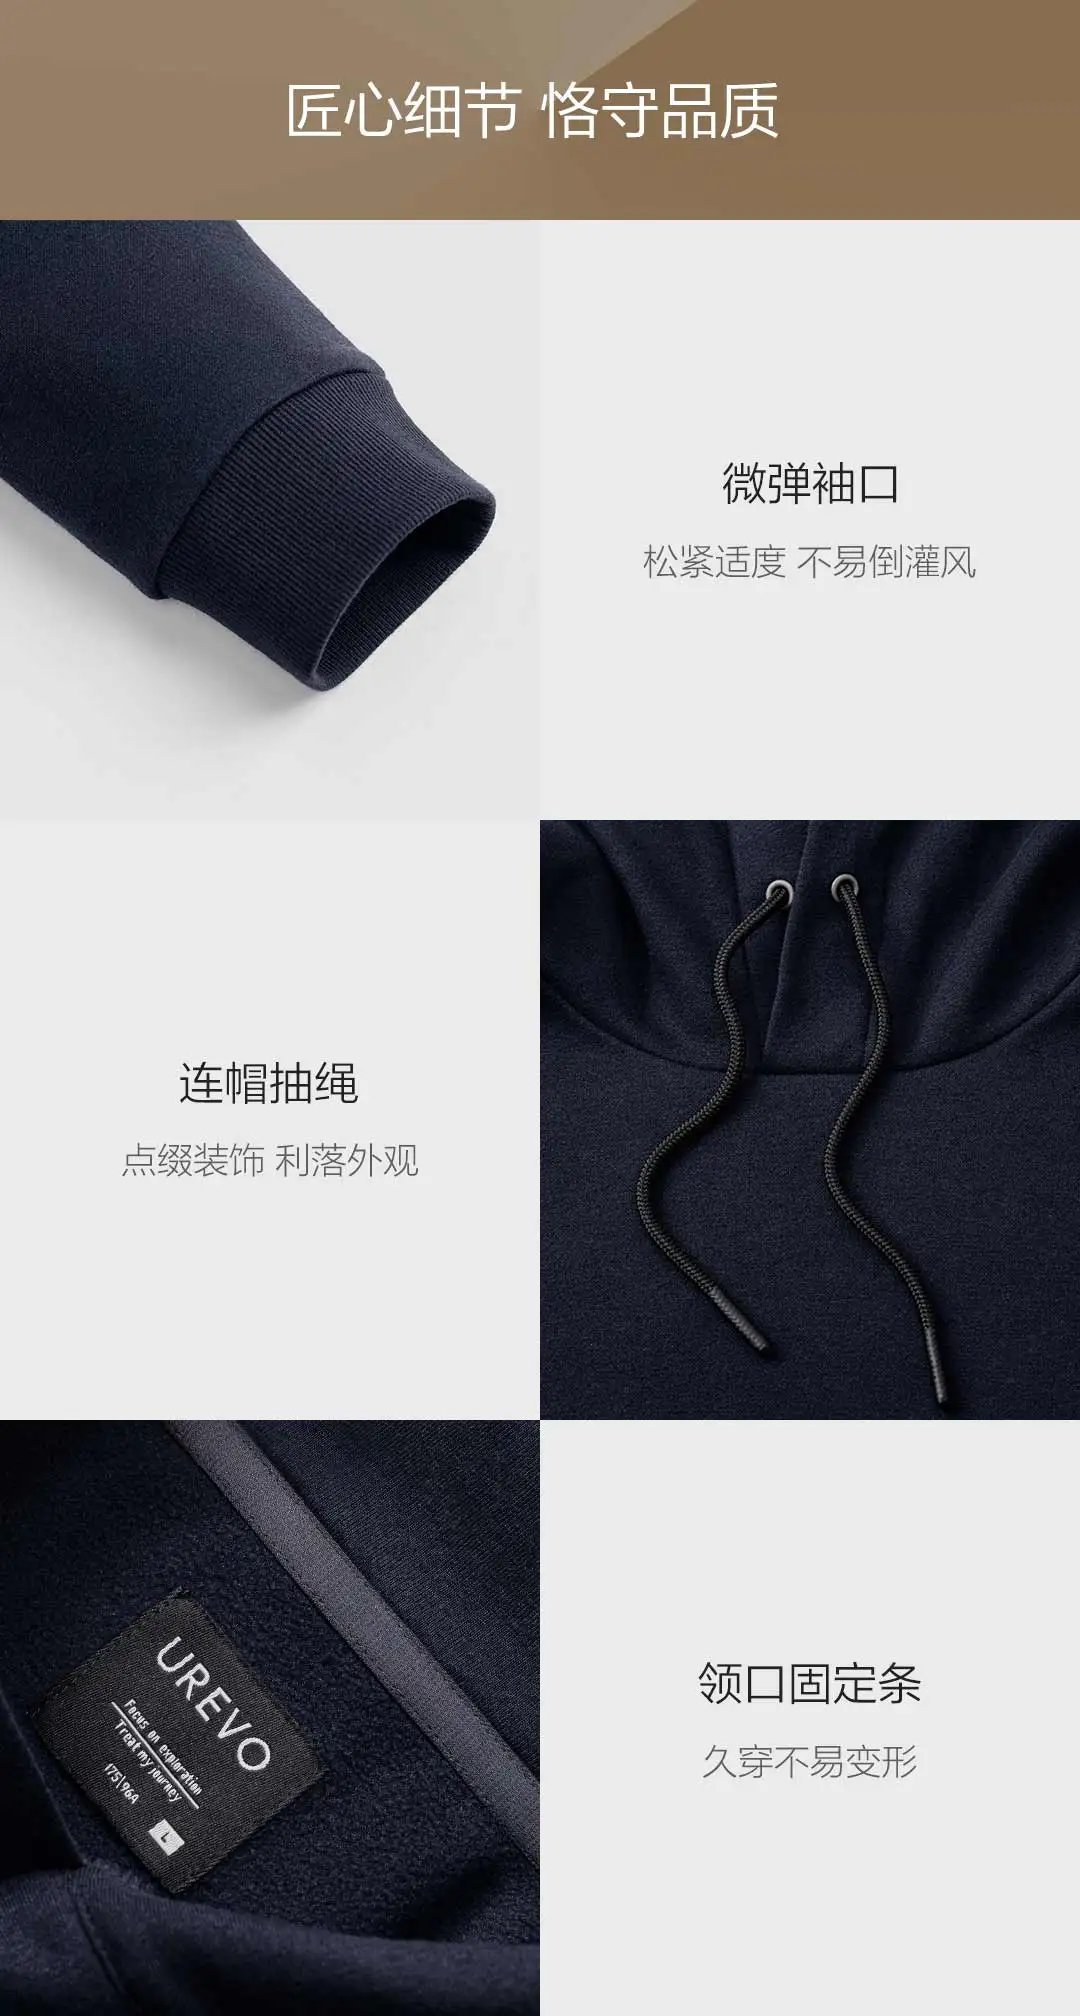 Новинка Xiaomi Mijia Youpin 90 point UREVO Мужской флисовый свитер с капюшоном трендовая замша мягкая и удобная